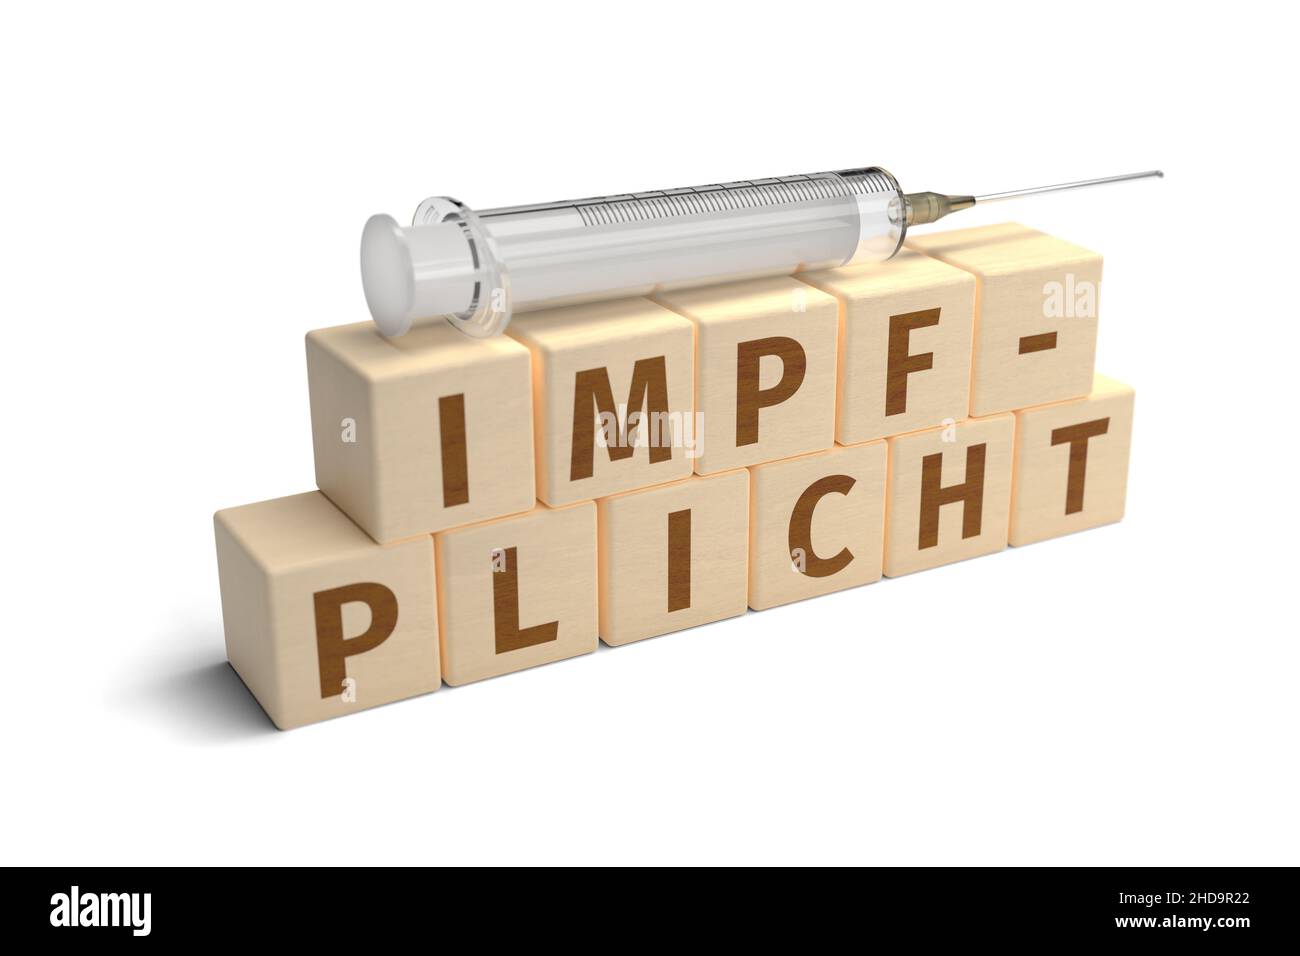 Le mot allemand Impfpflicht (vaccination obligatoire) a été construit à partir de lettres sur des cubes en bois.Une seringue sur le dessus.Isolé sur blanc pur. Banque D'Images